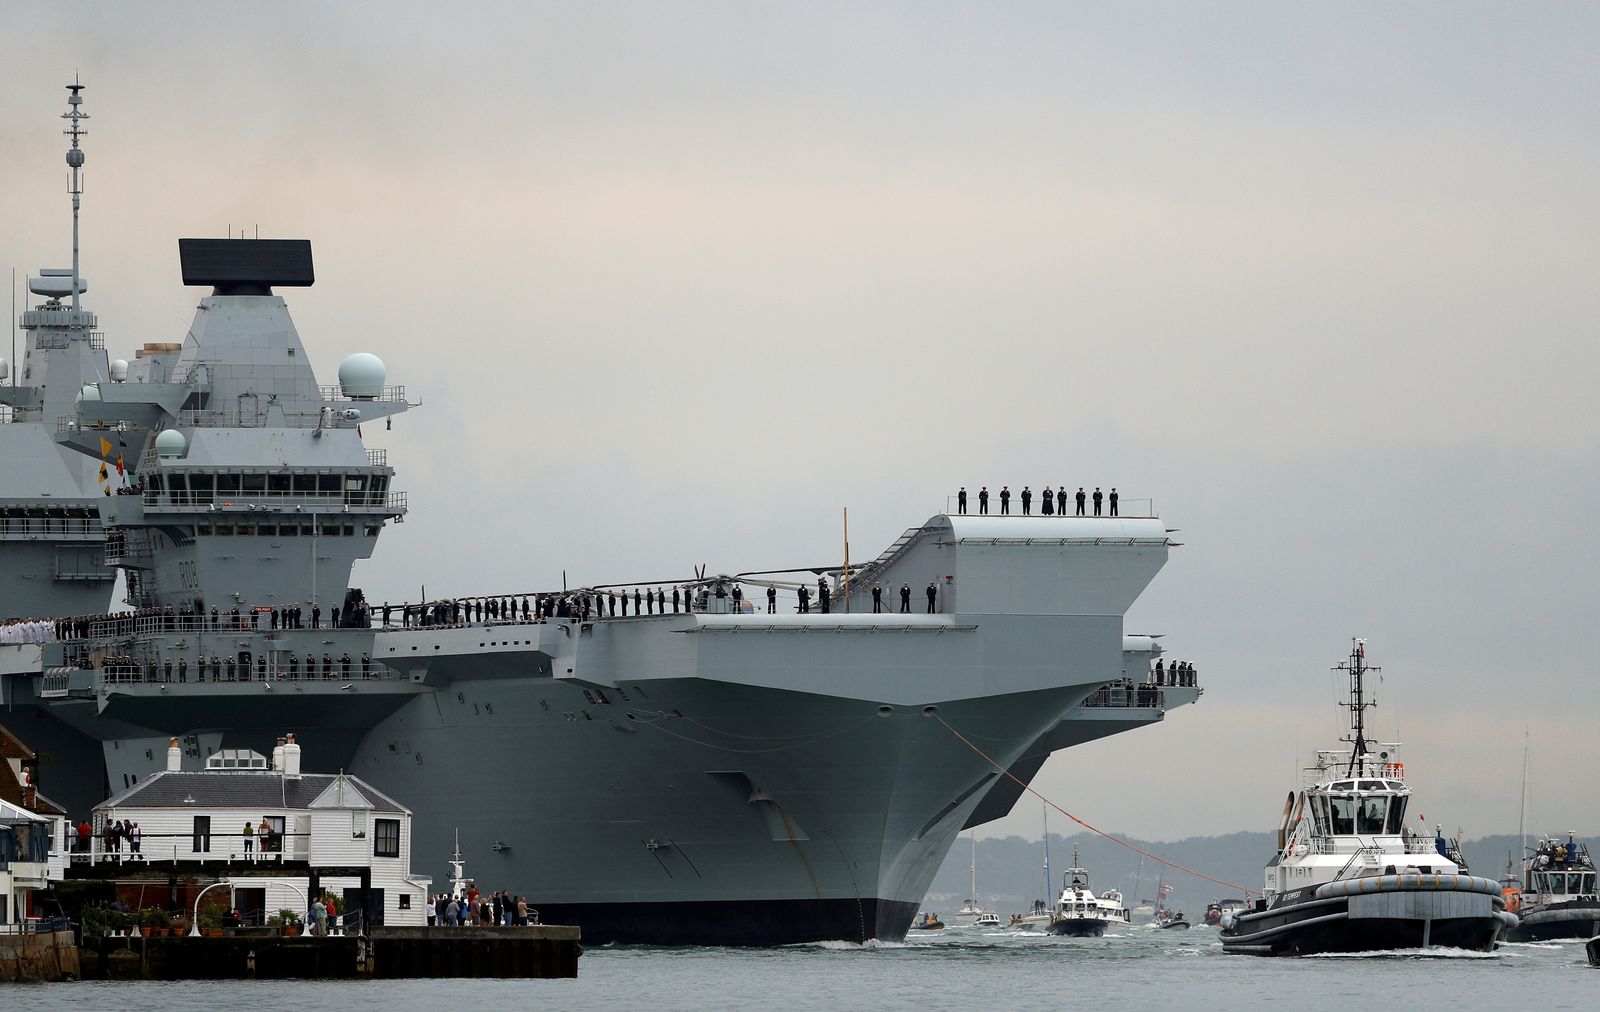 حاملة الطائرات البحرية الملكية، HMS Queen Elizabeth، يتم سحبها بواسطة القاطرات عند وصولها إلى قاعدة بورتسموث البحري ، بريطانيا. 16 أغسطس 2017 - REUTERS